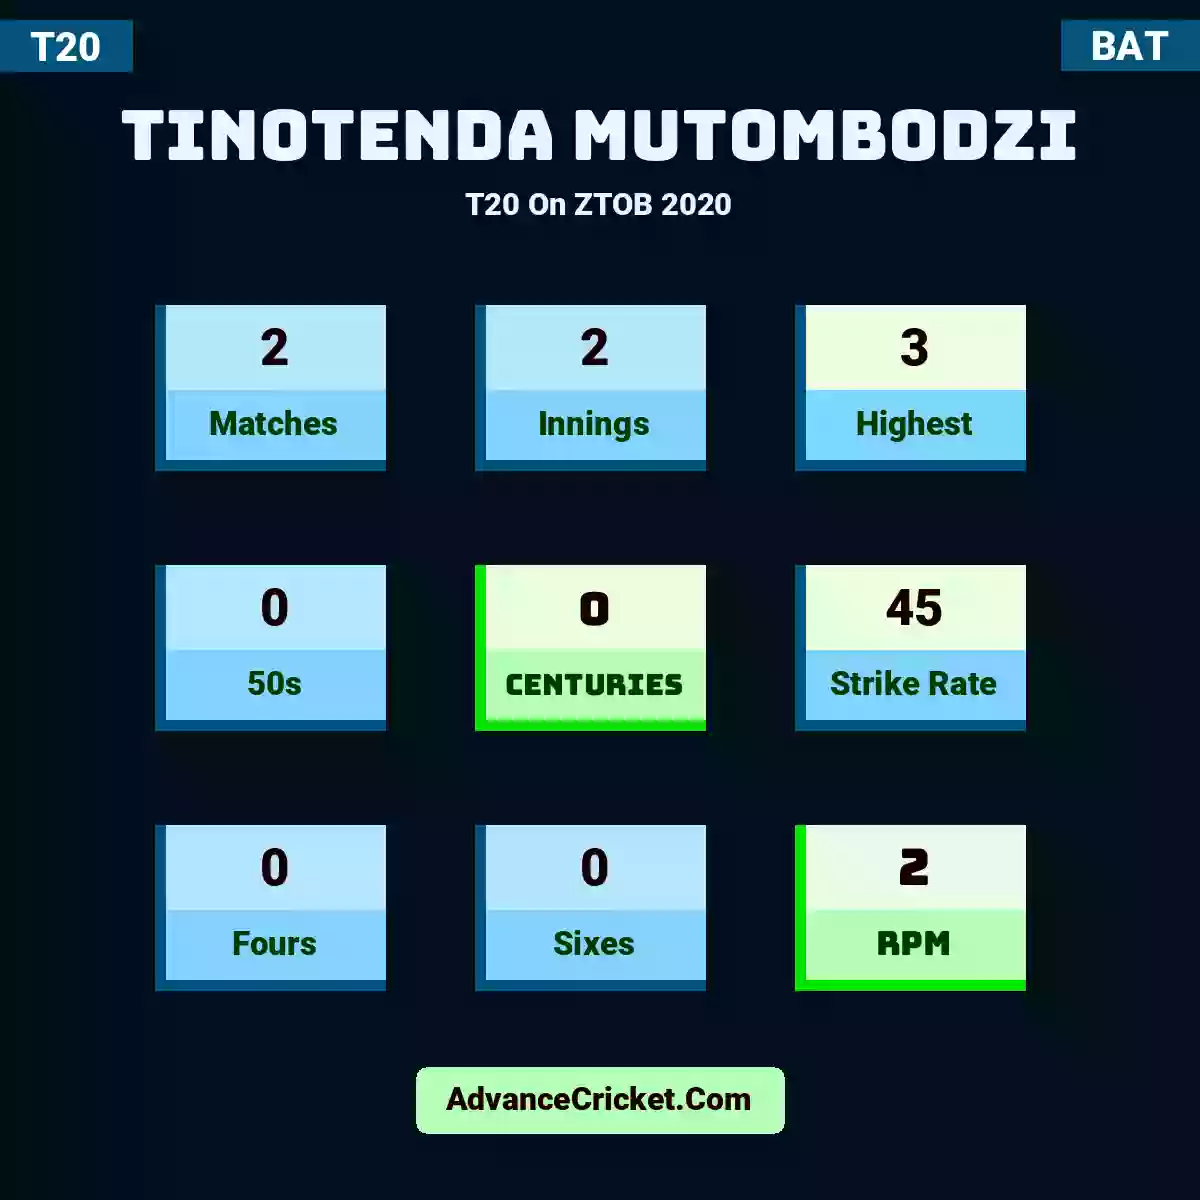 Tinotenda Mutombodzi T20  On ZTOB 2020, Tinotenda Mutombodzi played 2 matches, scored 3 runs as highest, 0 half-centuries, and 0 centuries, with a strike rate of 45. T.Mutombodzi hit 0 fours and 0 sixes, with an RPM of 2.